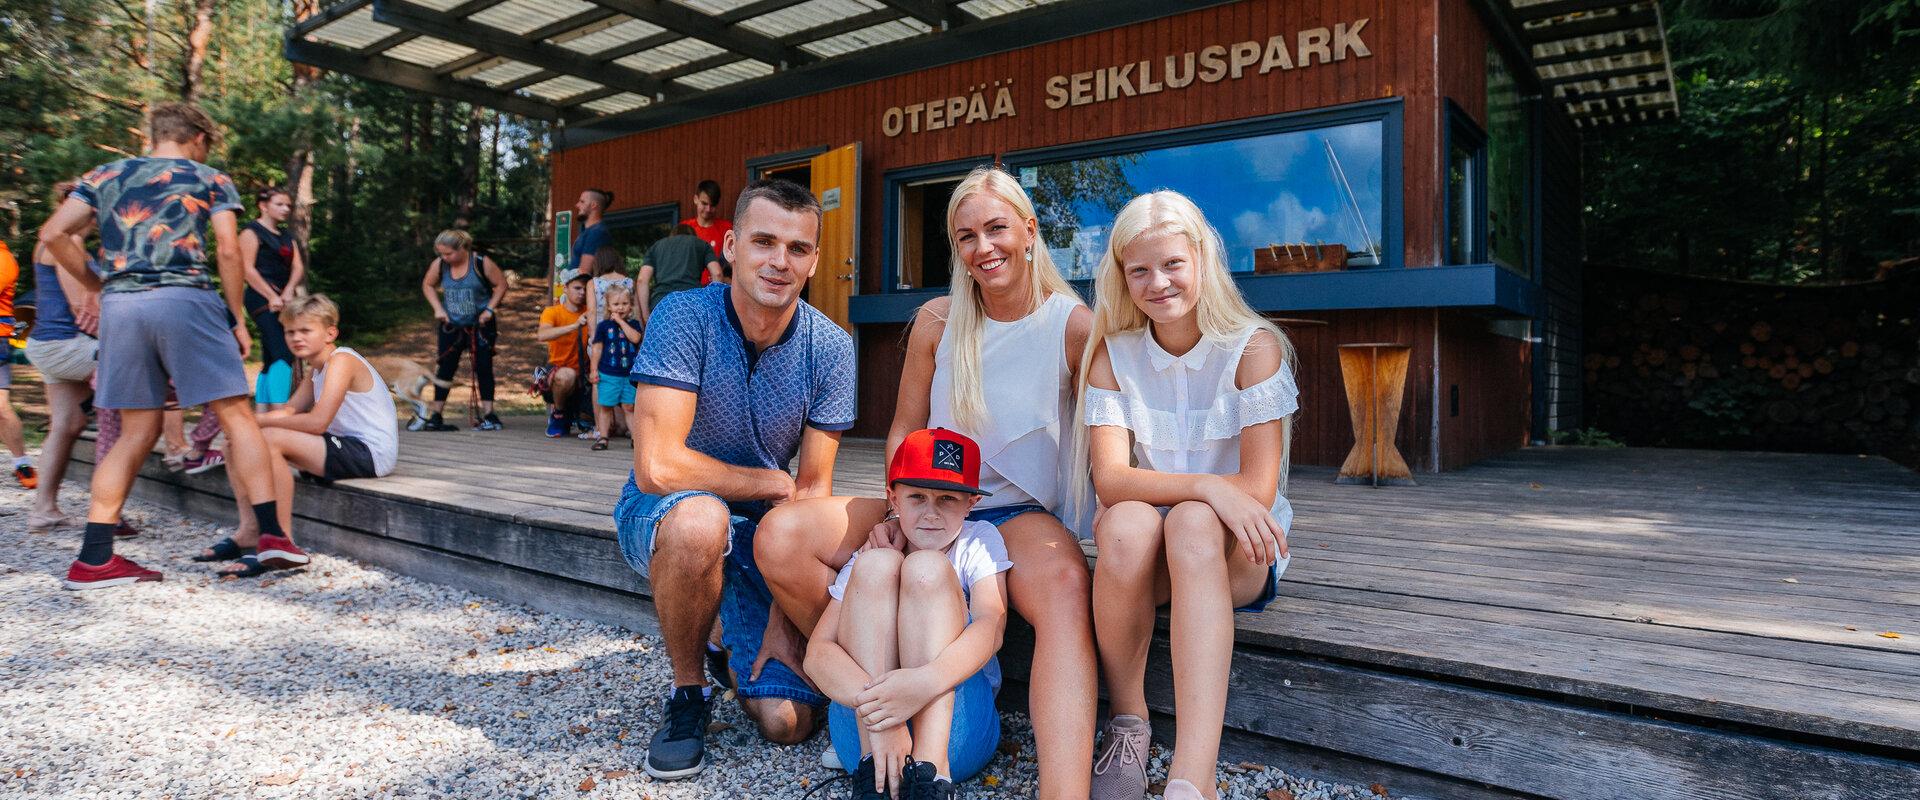 Seikkailupuisto Otepää Seikluspark